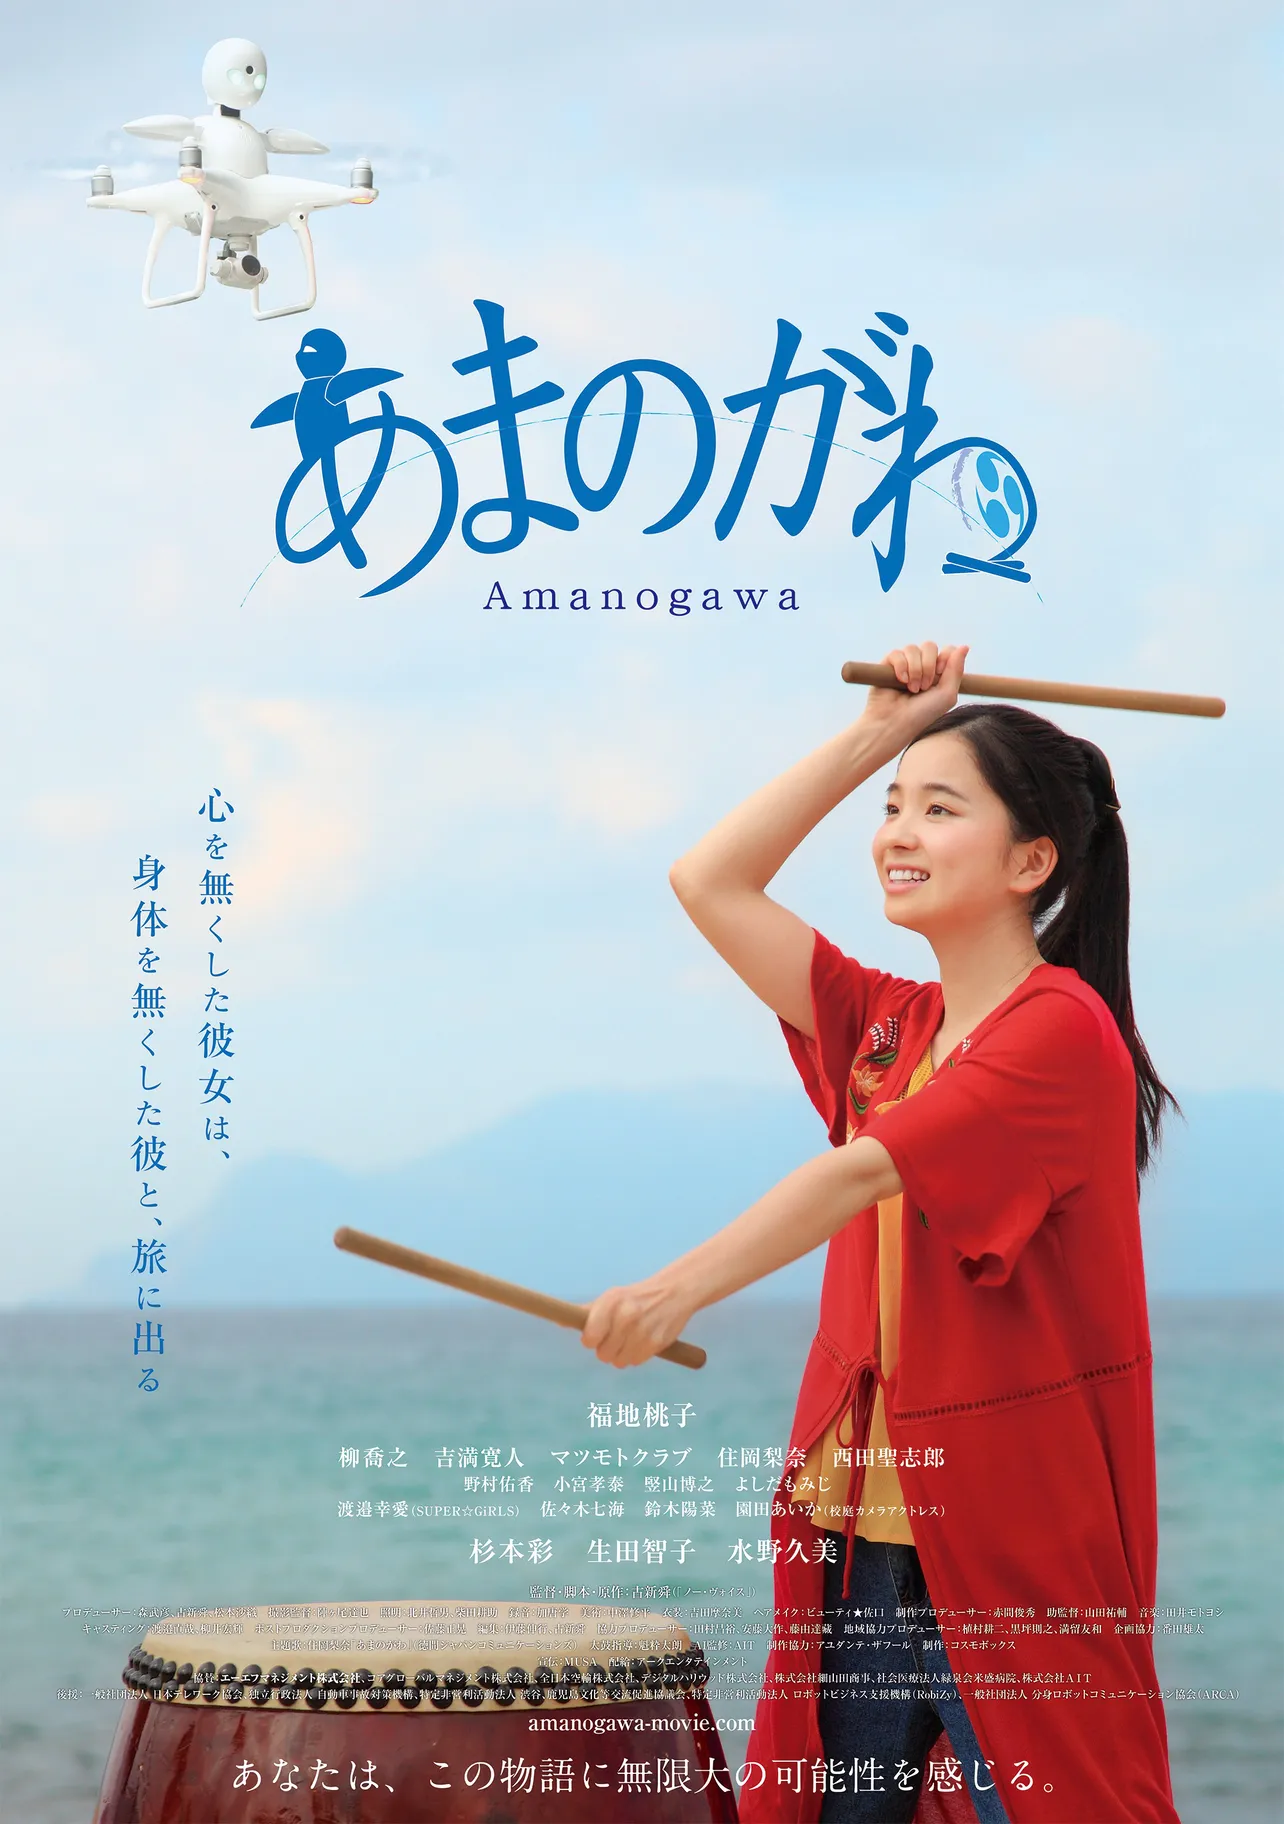 2019年2月9日公開の映画「あまのがわ」のポスターは、福地桃子演じる史織の太鼓を打つ姿が描かれている